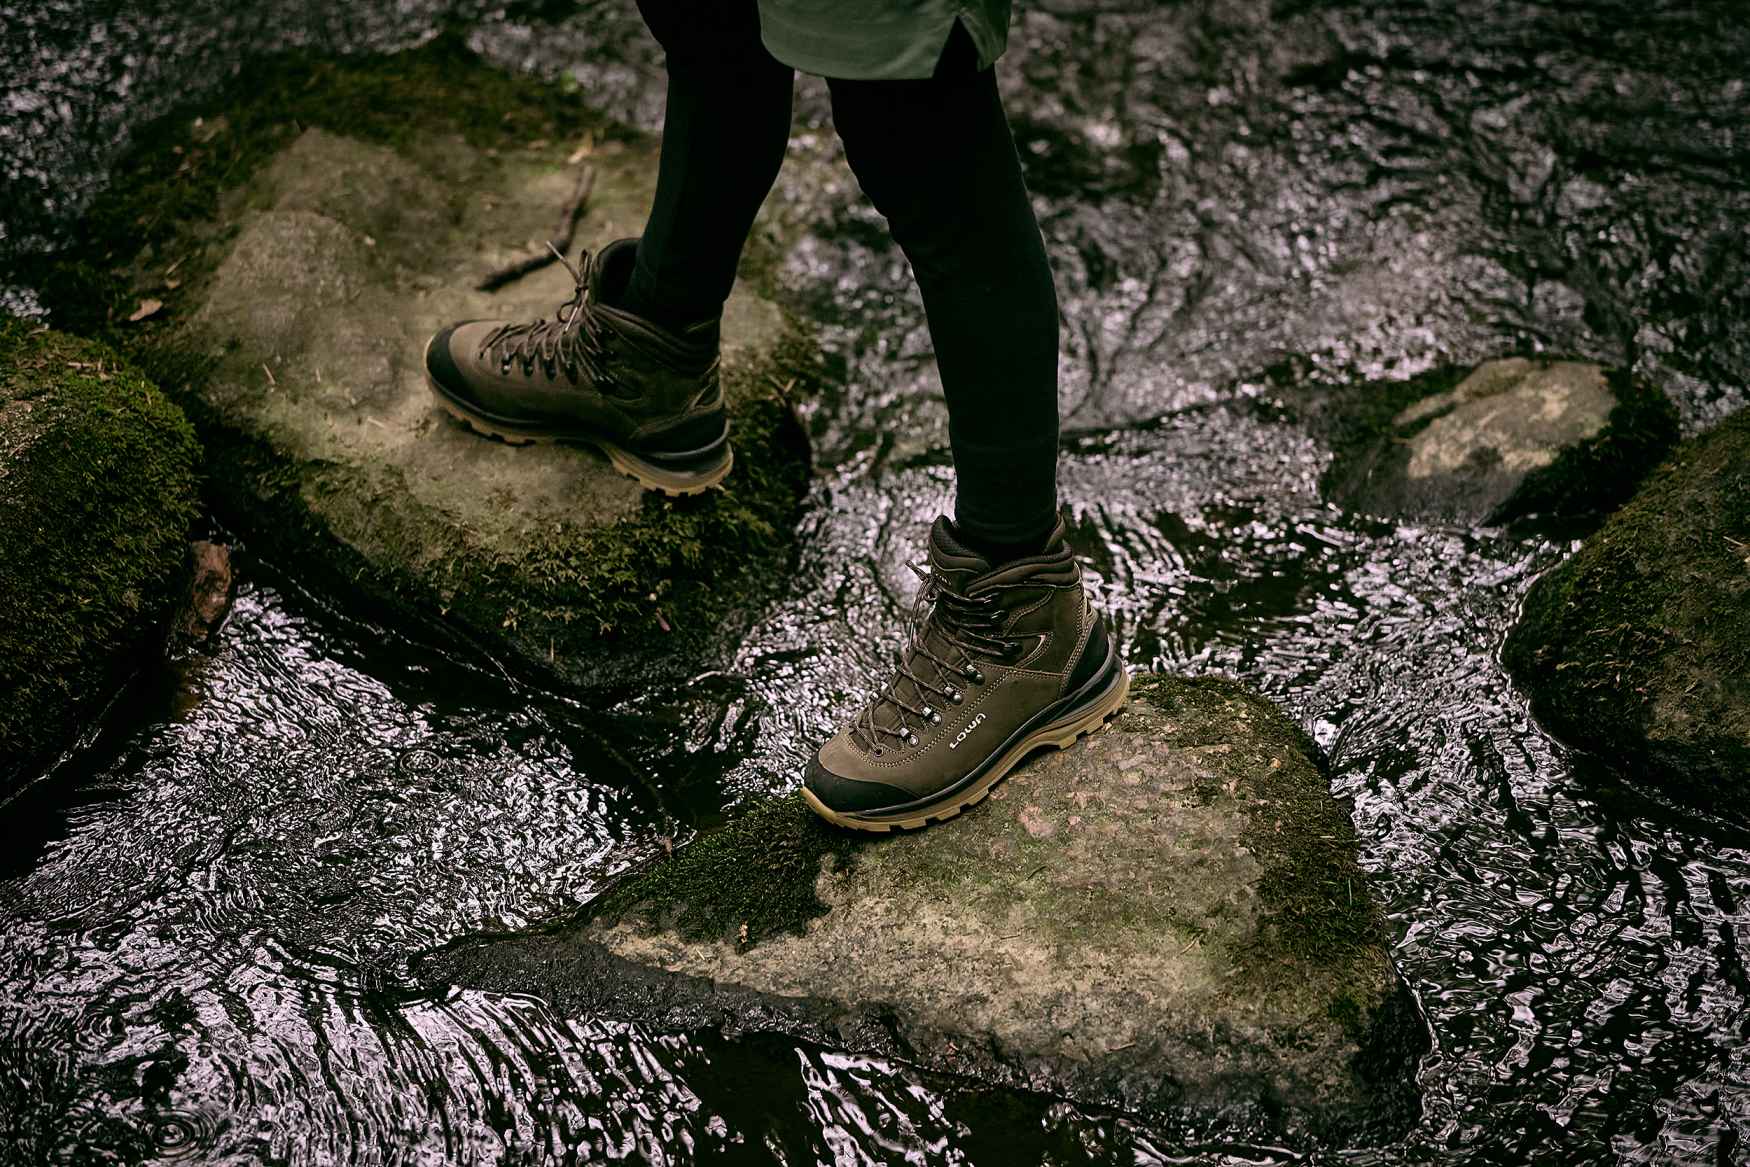 Au fil des années, LOWA a révolutionné plus d’une fois la catégorie des chaussures de randonnée en montagne. Dernière innovation en date : le modèle de trek LADY GTX, doté d’une semelle innovante APPTRAIL DIVO Vibram composée de deux couches en PU, qui offre un excellent amorti et un maximum de confort et de stabilité. Les chaussures sont également équipées d’une membrane imperméable GORE-TEX, et offrent de nombreuses qualités techniques idéales pour le trek.